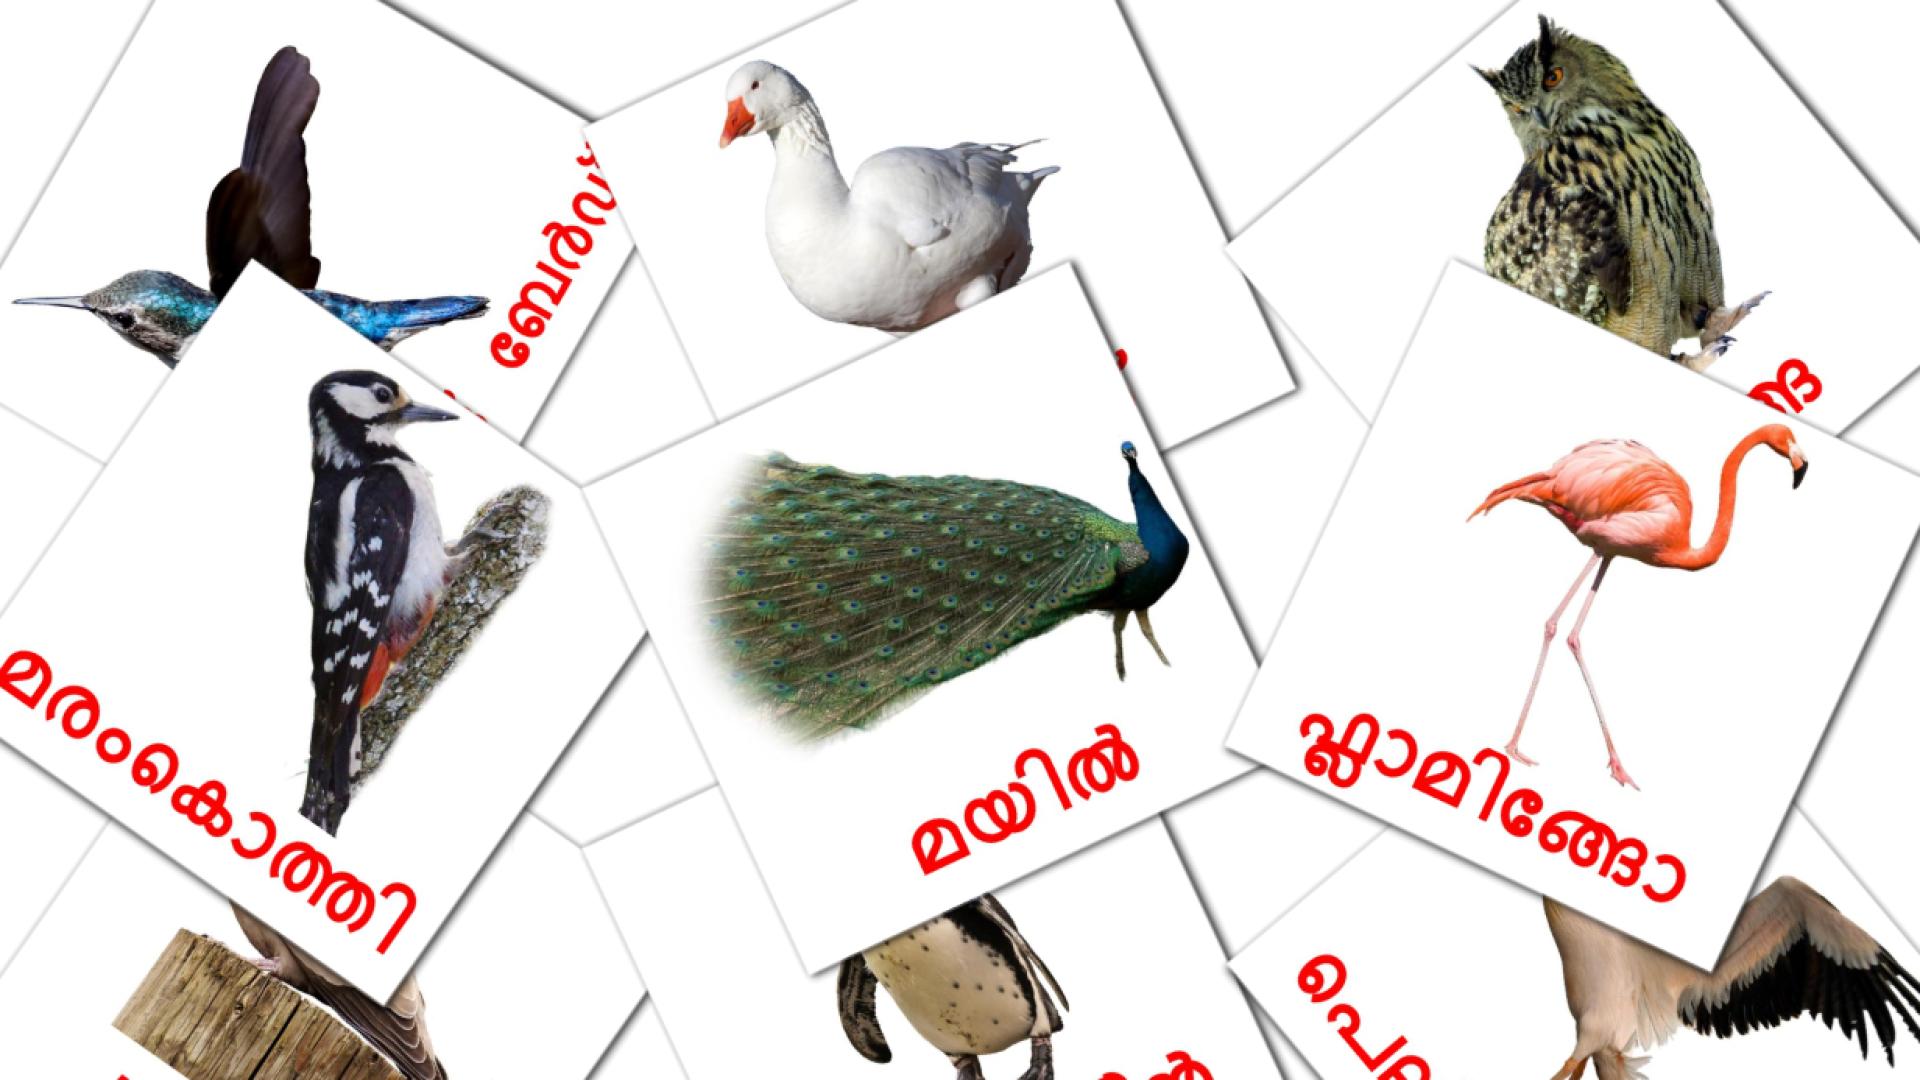 malayalam tarjetas de vocabulario en പക്ഷികൾ